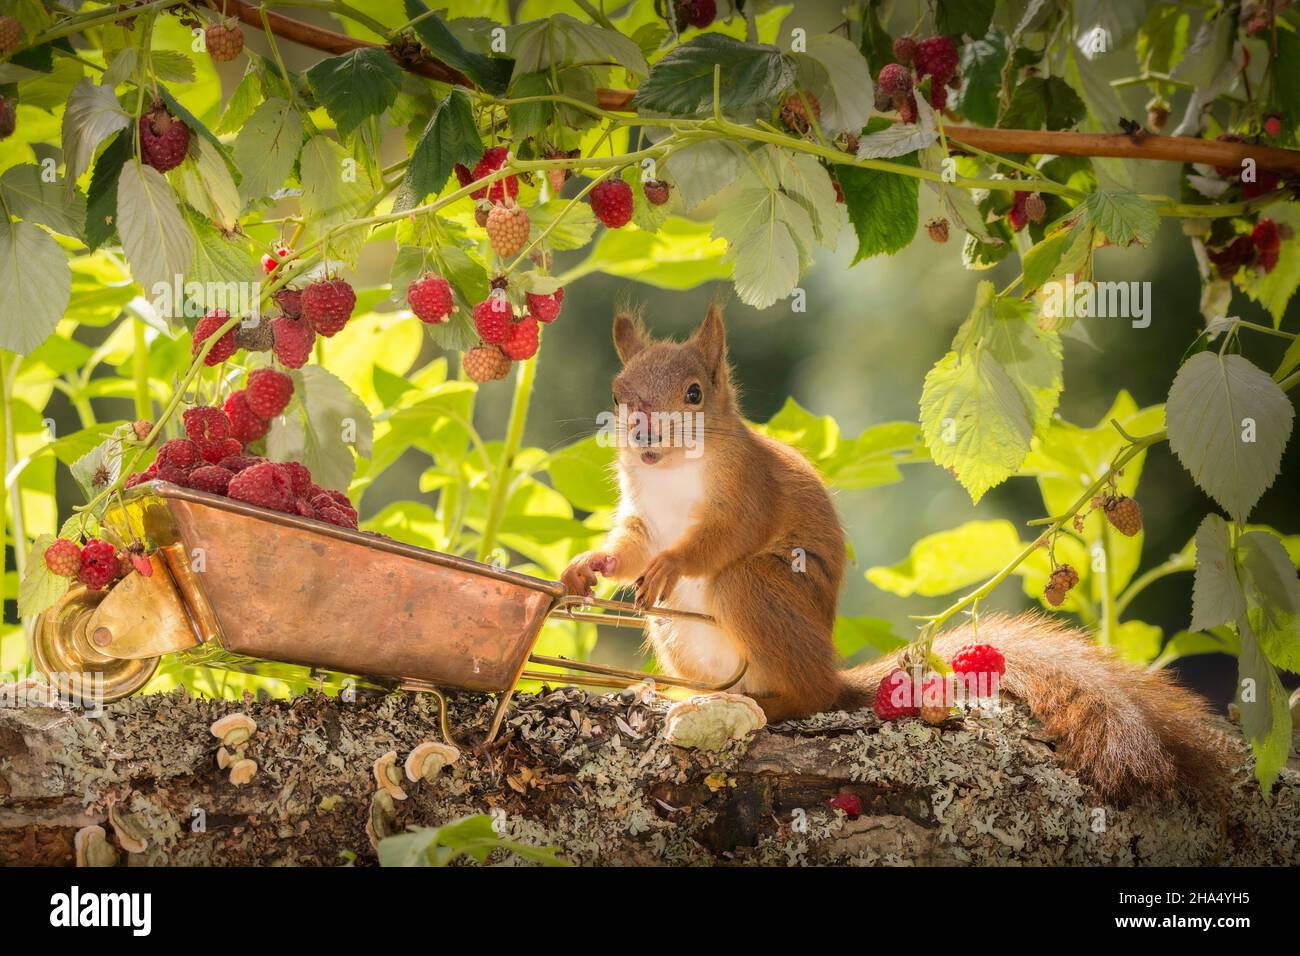 L'écureuil roux et un nez rouge debout avec une brouette remplie de framboises Banque D'Images